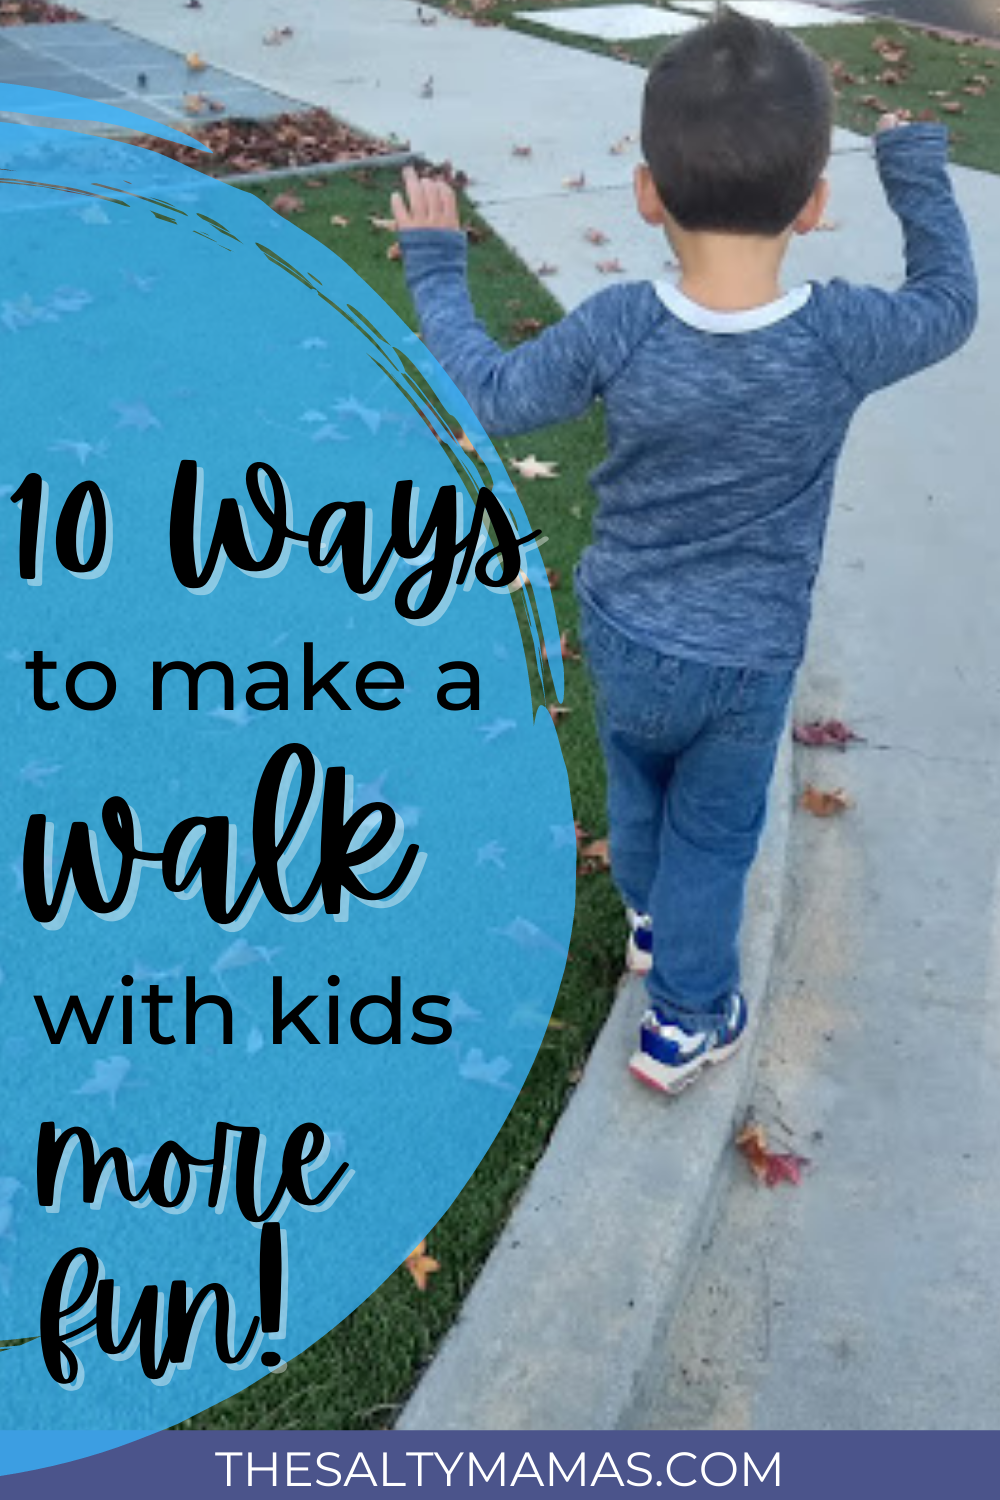 toddler walking; text: make your walk with kids more fun